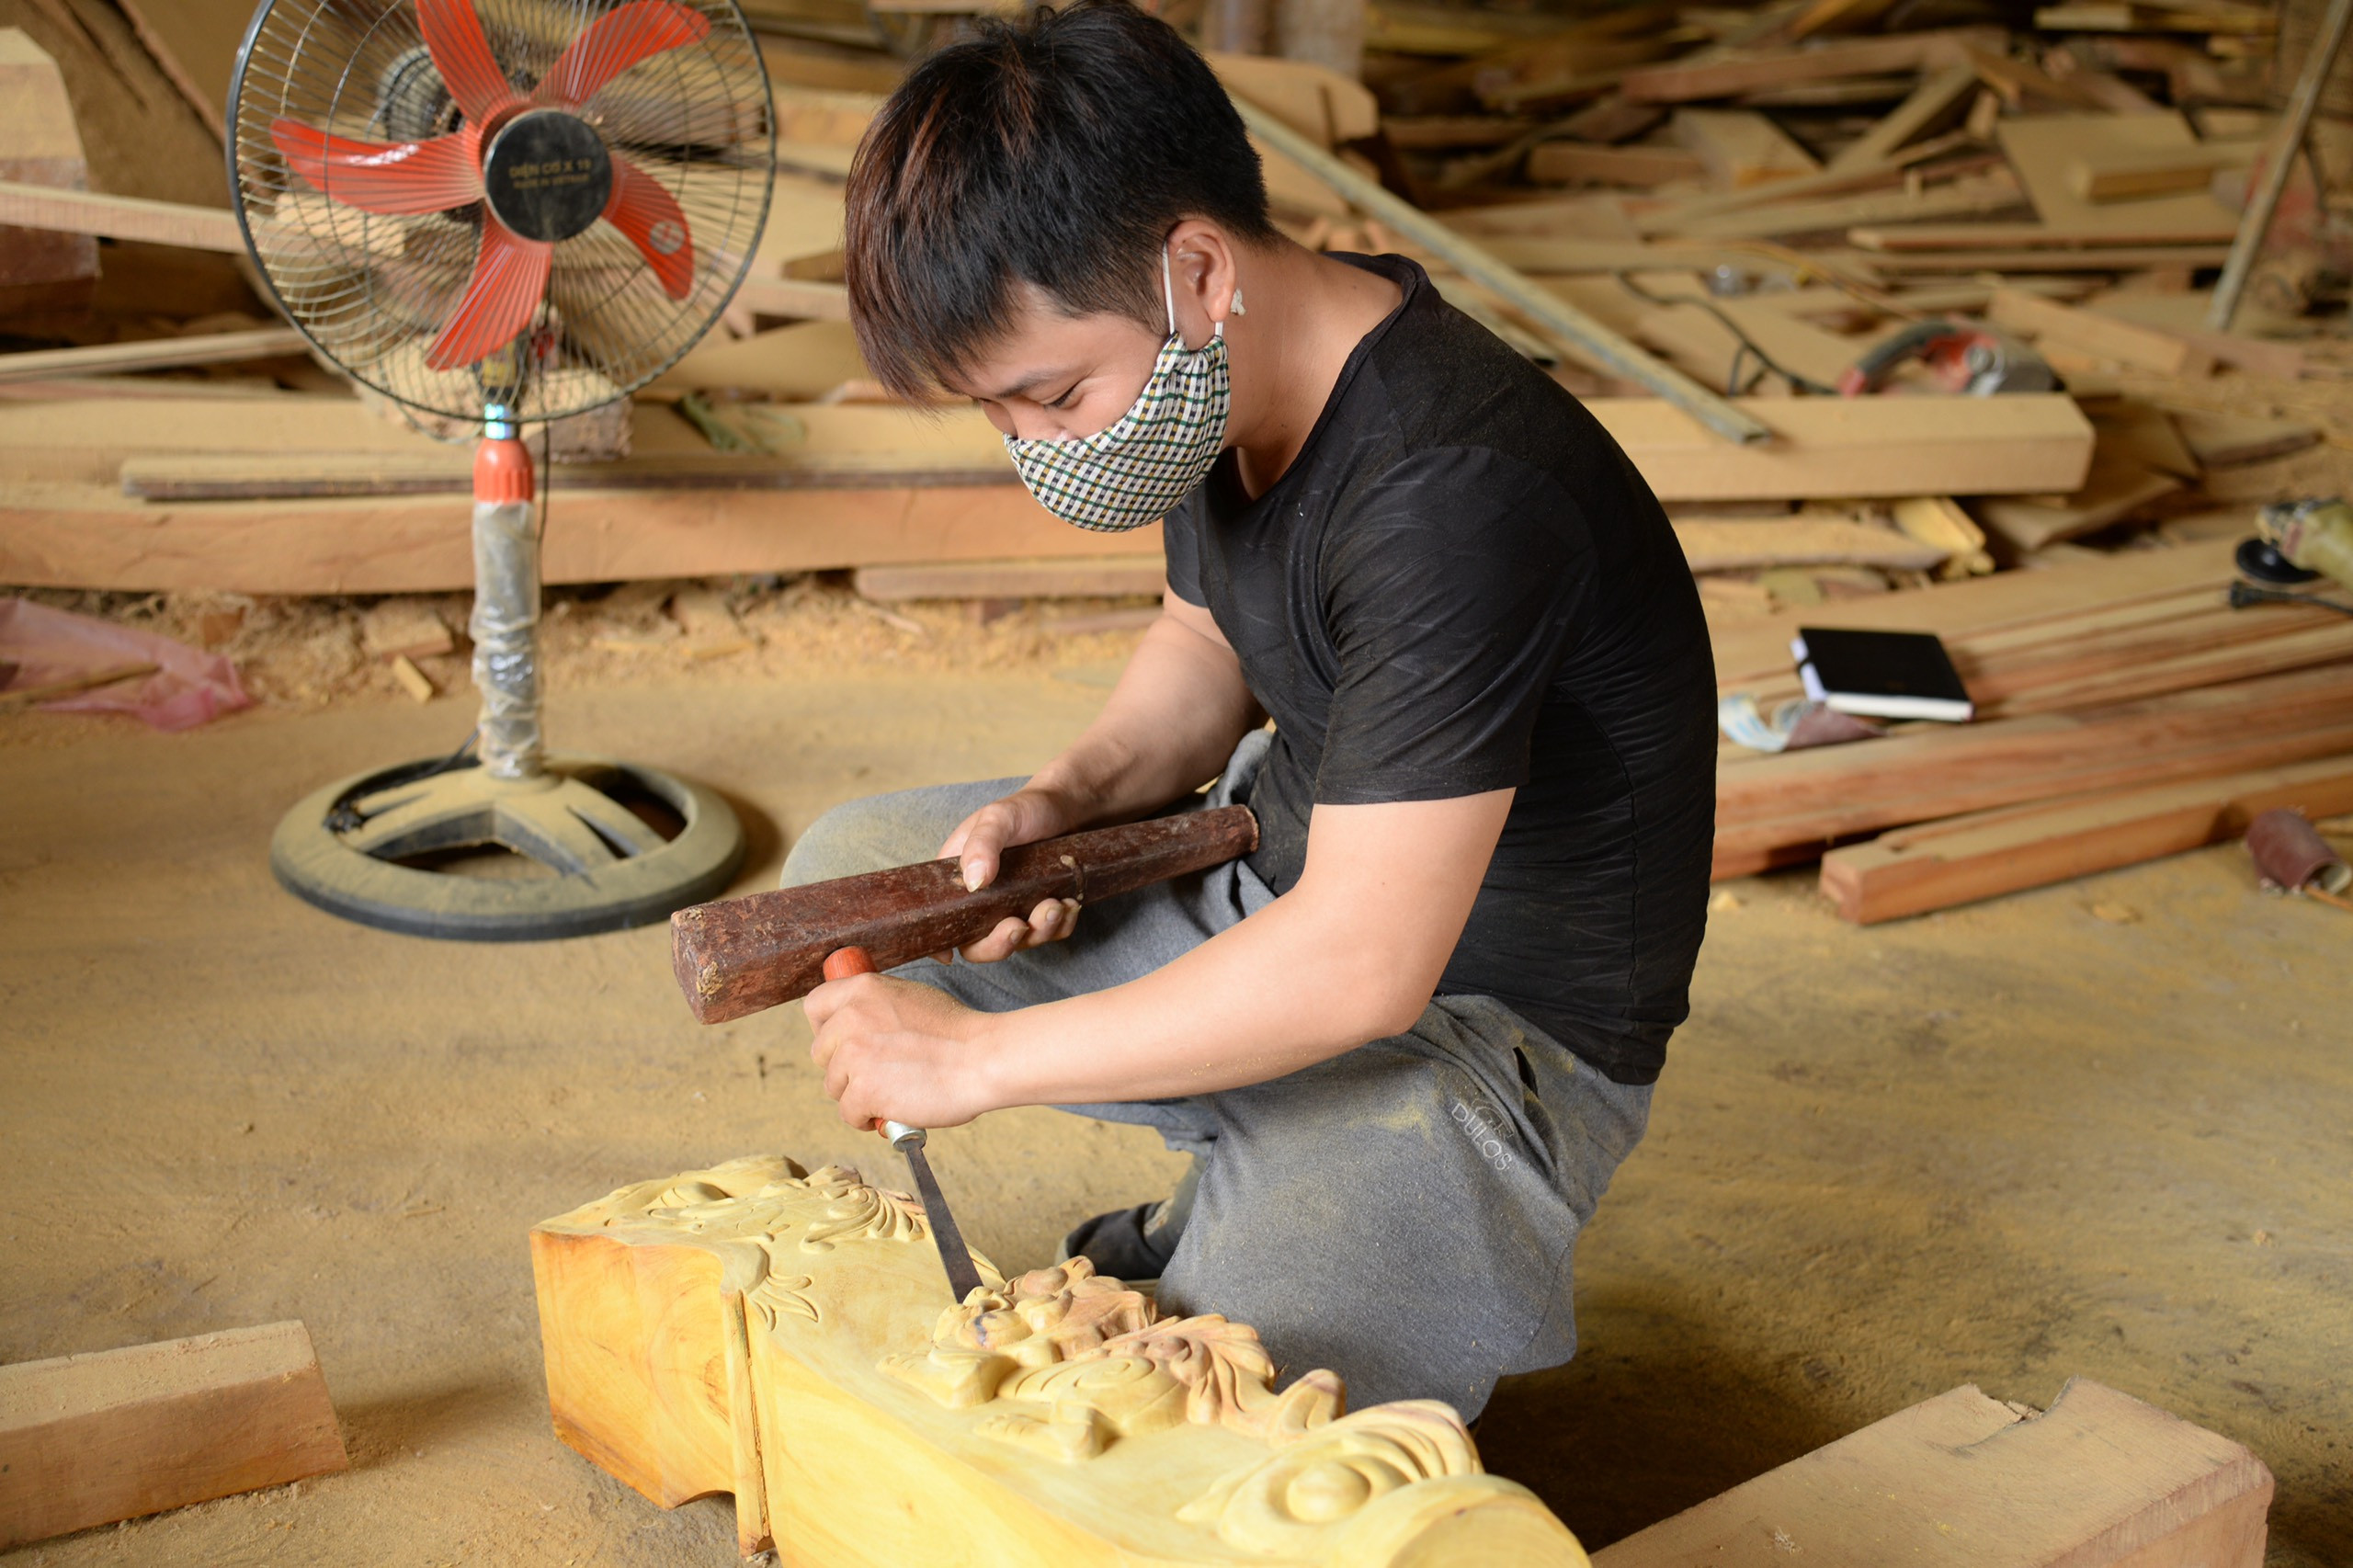 Đội thợ mộc chuyên dựng nhà từ gỗ mít, mỗi căn trị giá hàng tỷ đồng